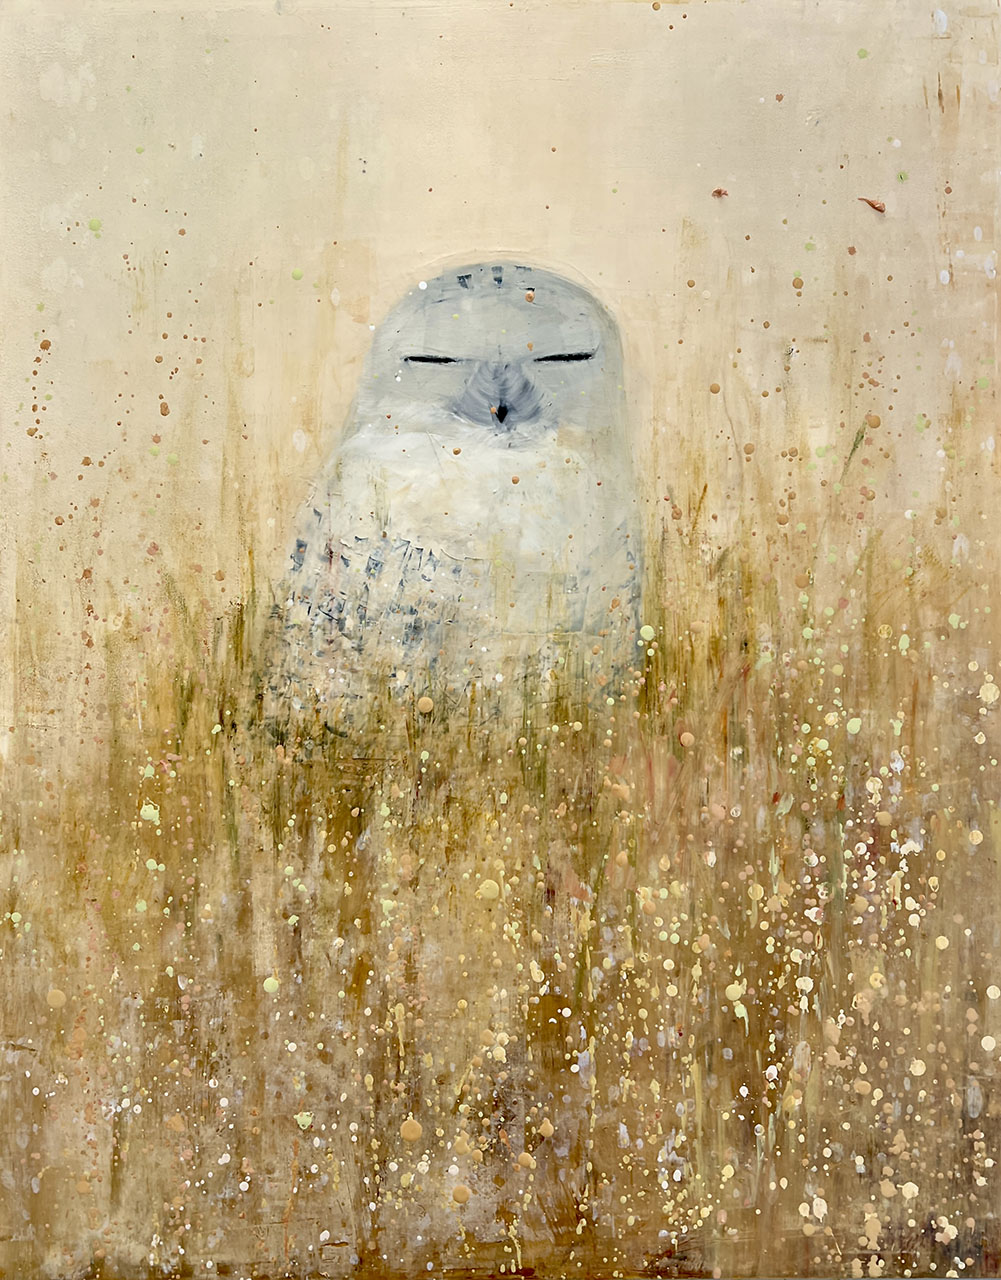 Snowy Owl, Golden Field by Rebecca Kinkead